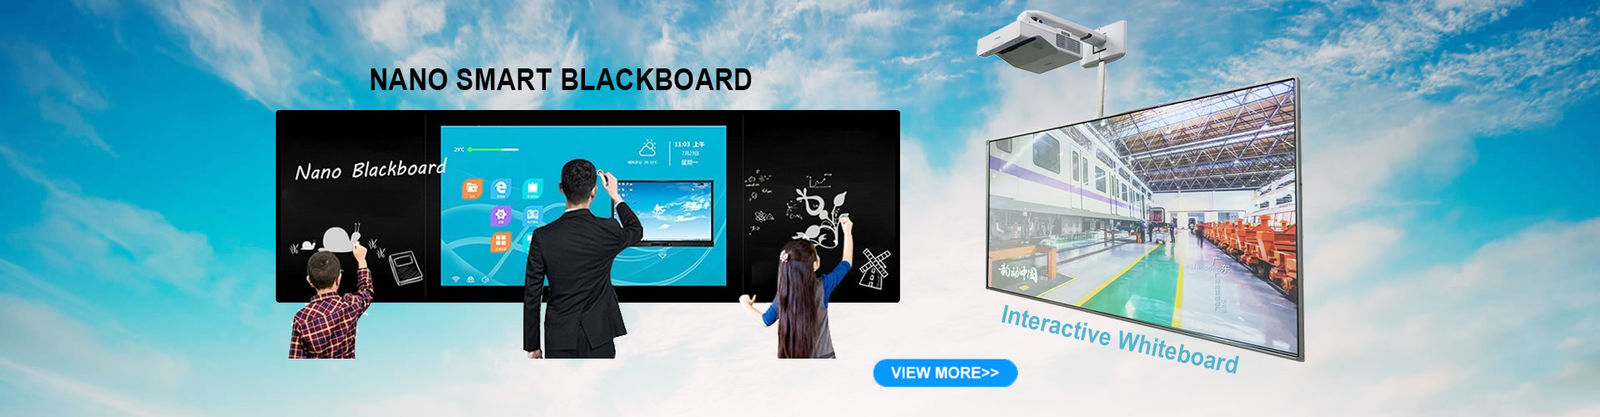 Educación Whiteboard interactivo